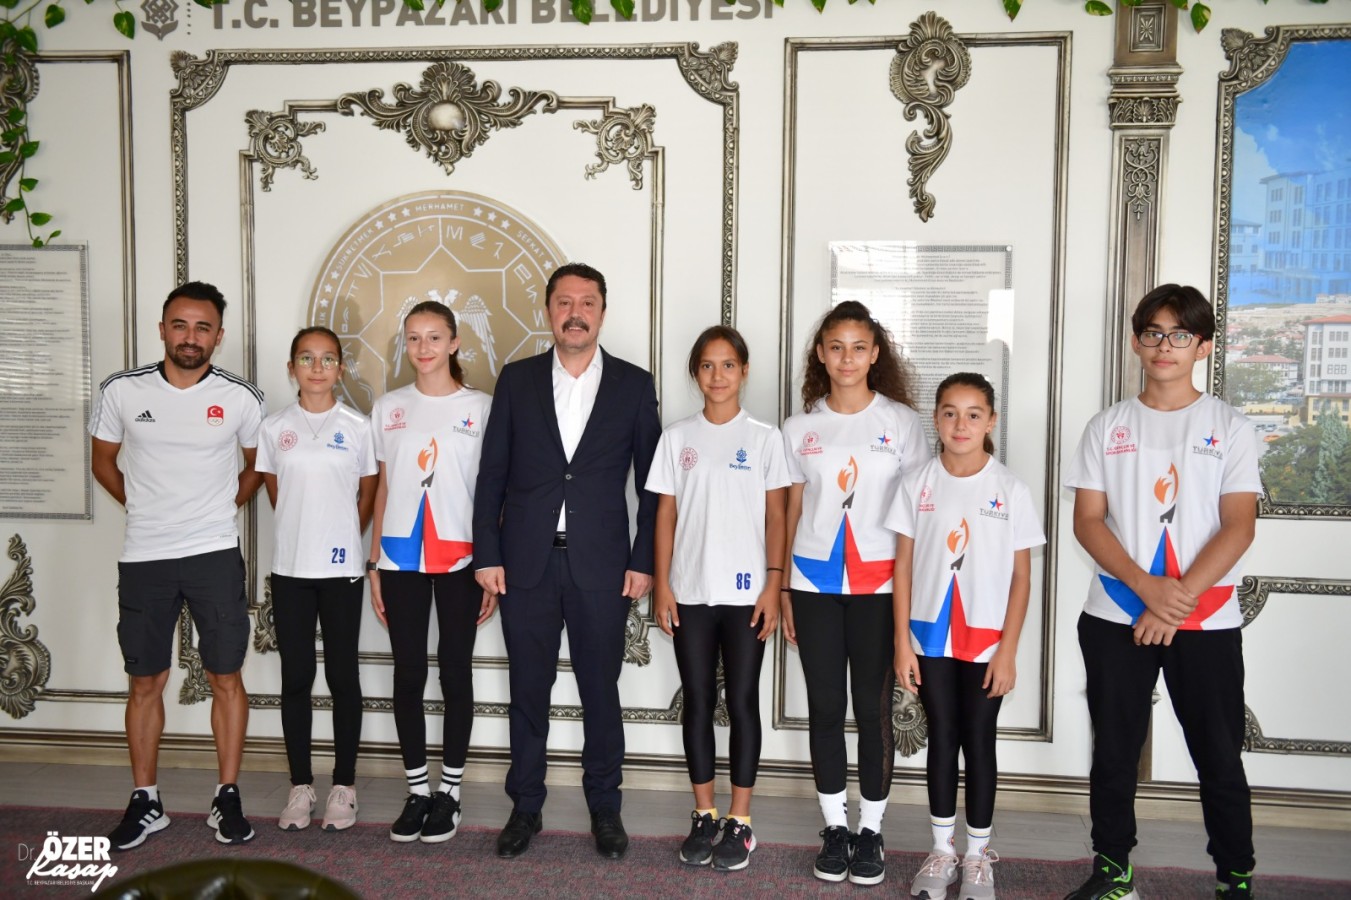 Beypazarı Belediyesi Gençlik ve Spor Kulübü sporcuları